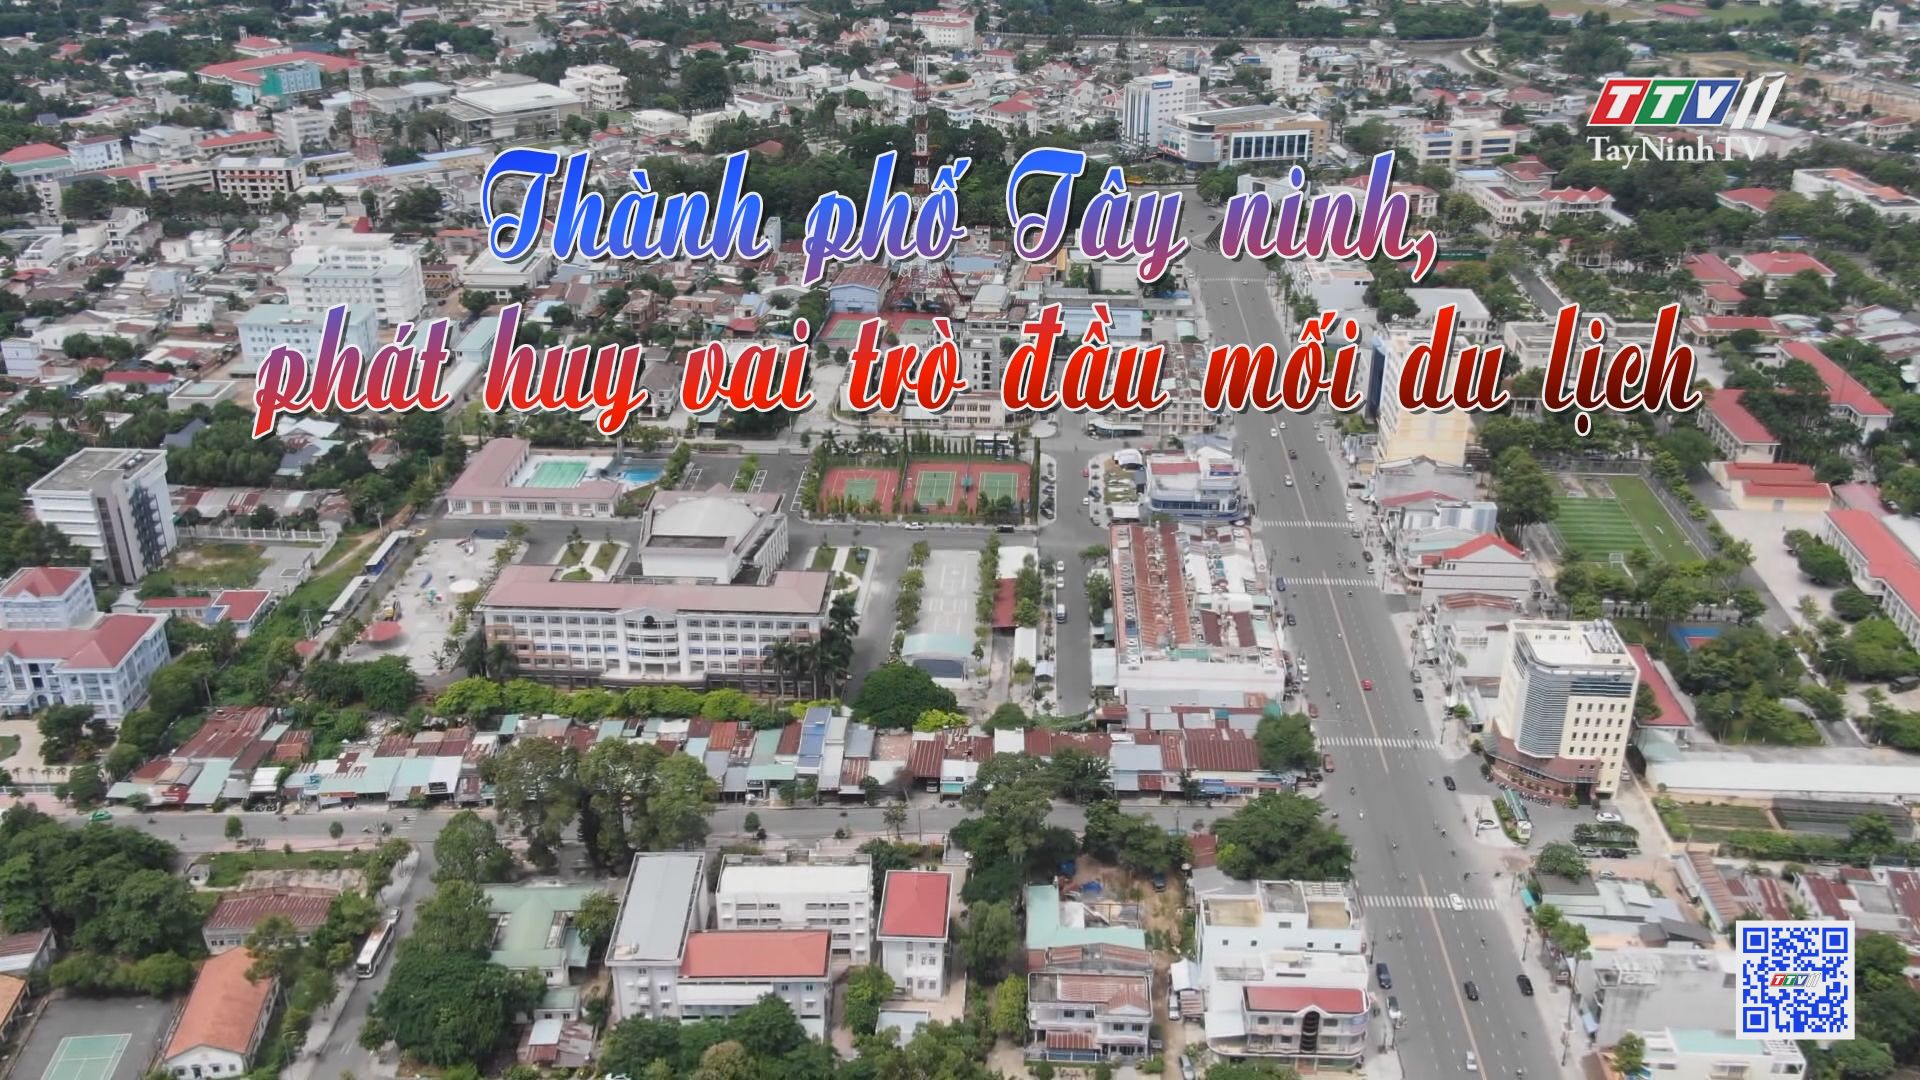 Thành phố Tây Ninh phát huy vai trò đầu mối du lịch | ẤN TƯỢNG TÂY NINH | TayNinhTV